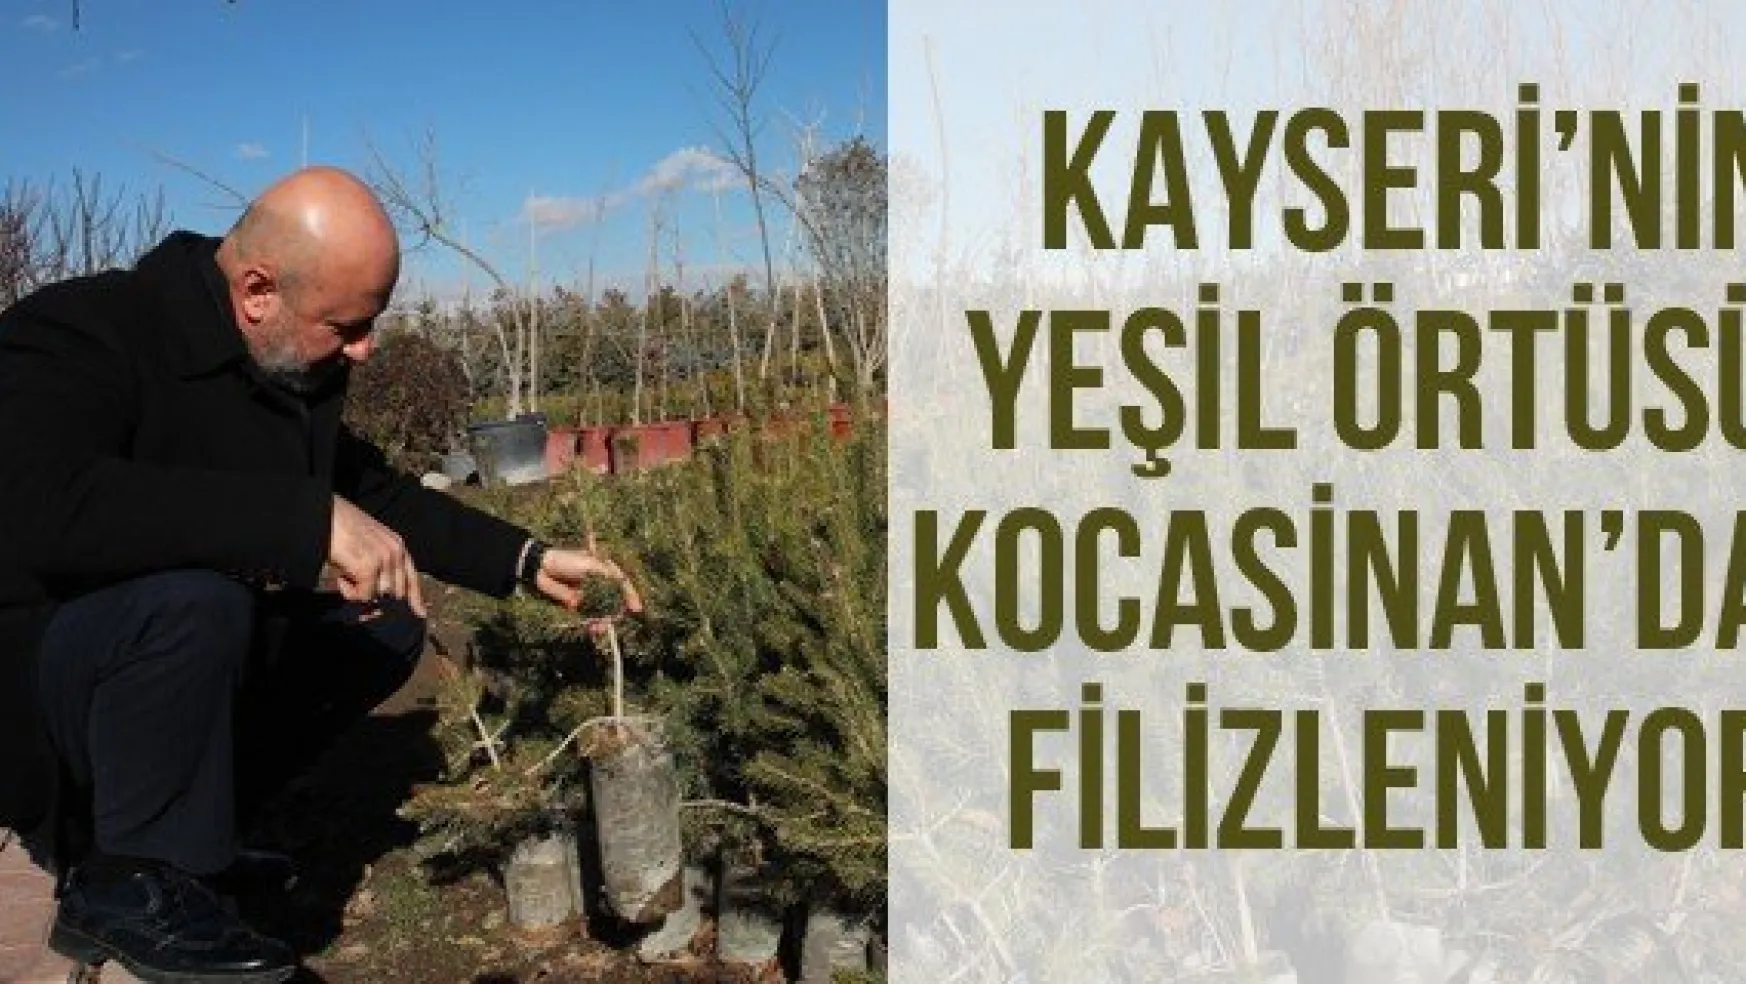 Kayseri'nin Yeşil Örtüsü Kocasinan'da Filizleniyor